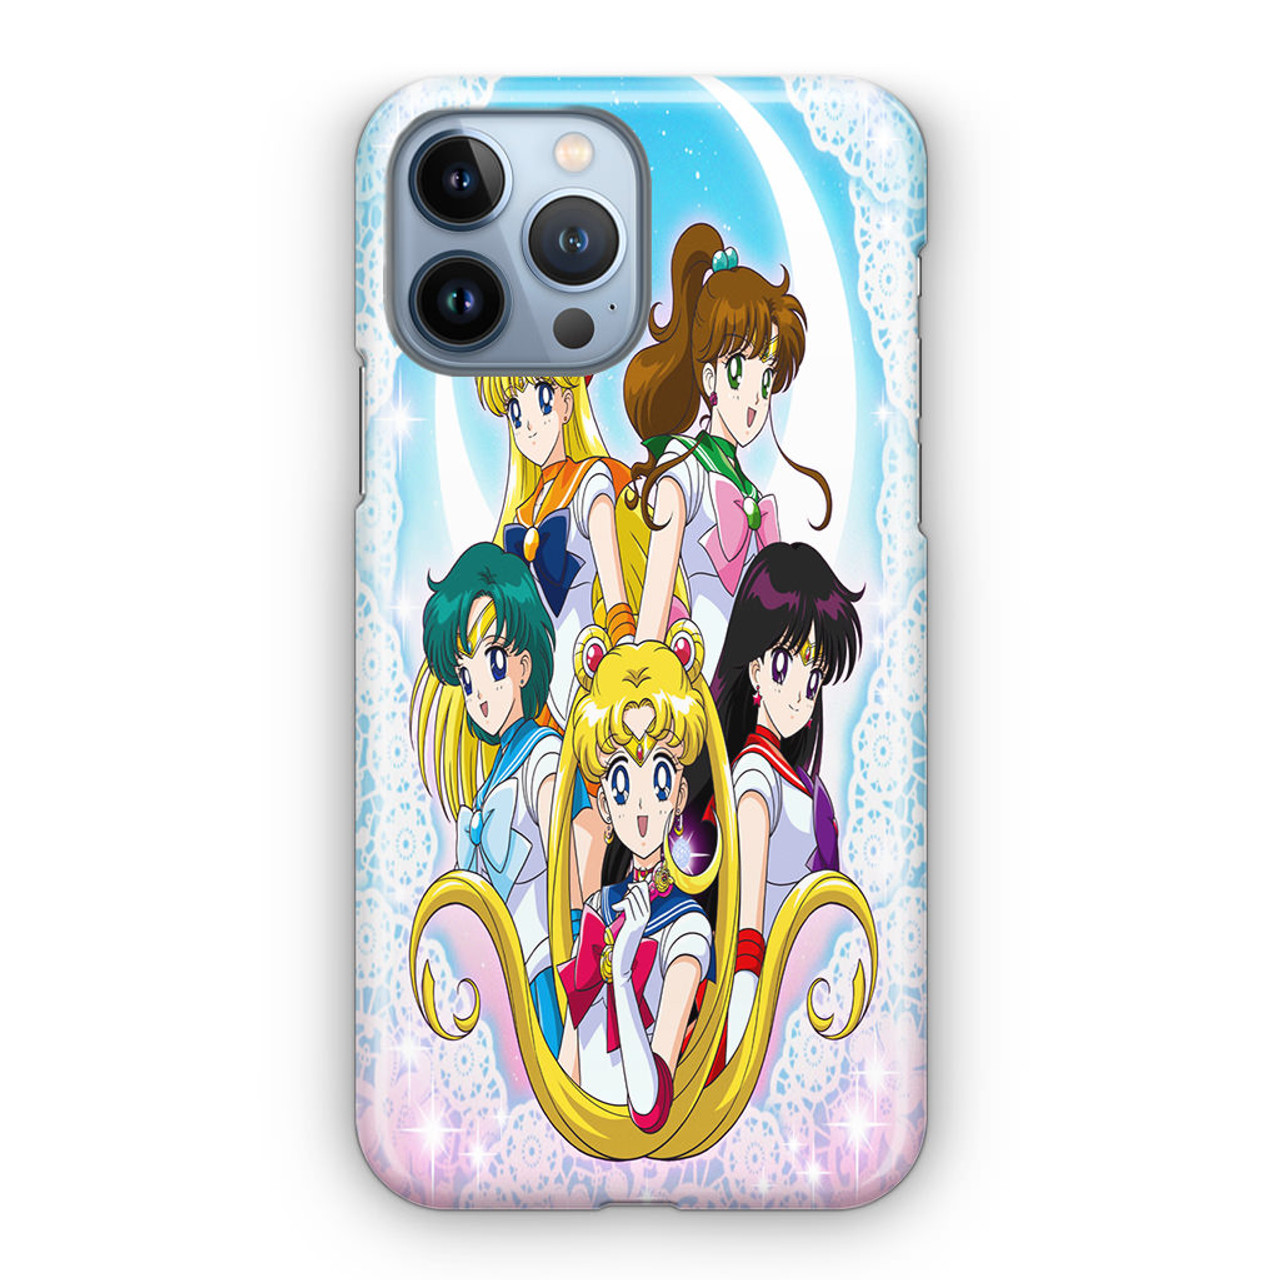 Bạn là một fan của Sailor Moon? Hãy thể hiện niềm đam mê của mình với chiếc iPhone 13 Pro của bạn bằng việc trang trí nó với hình nền mang phong cách nhân vật này! Thiết kế hoàn toàn mới sẽ khiến bạn cảm thấy kết nối với nhân vật yêu thích của mình hơn bao giờ hết.